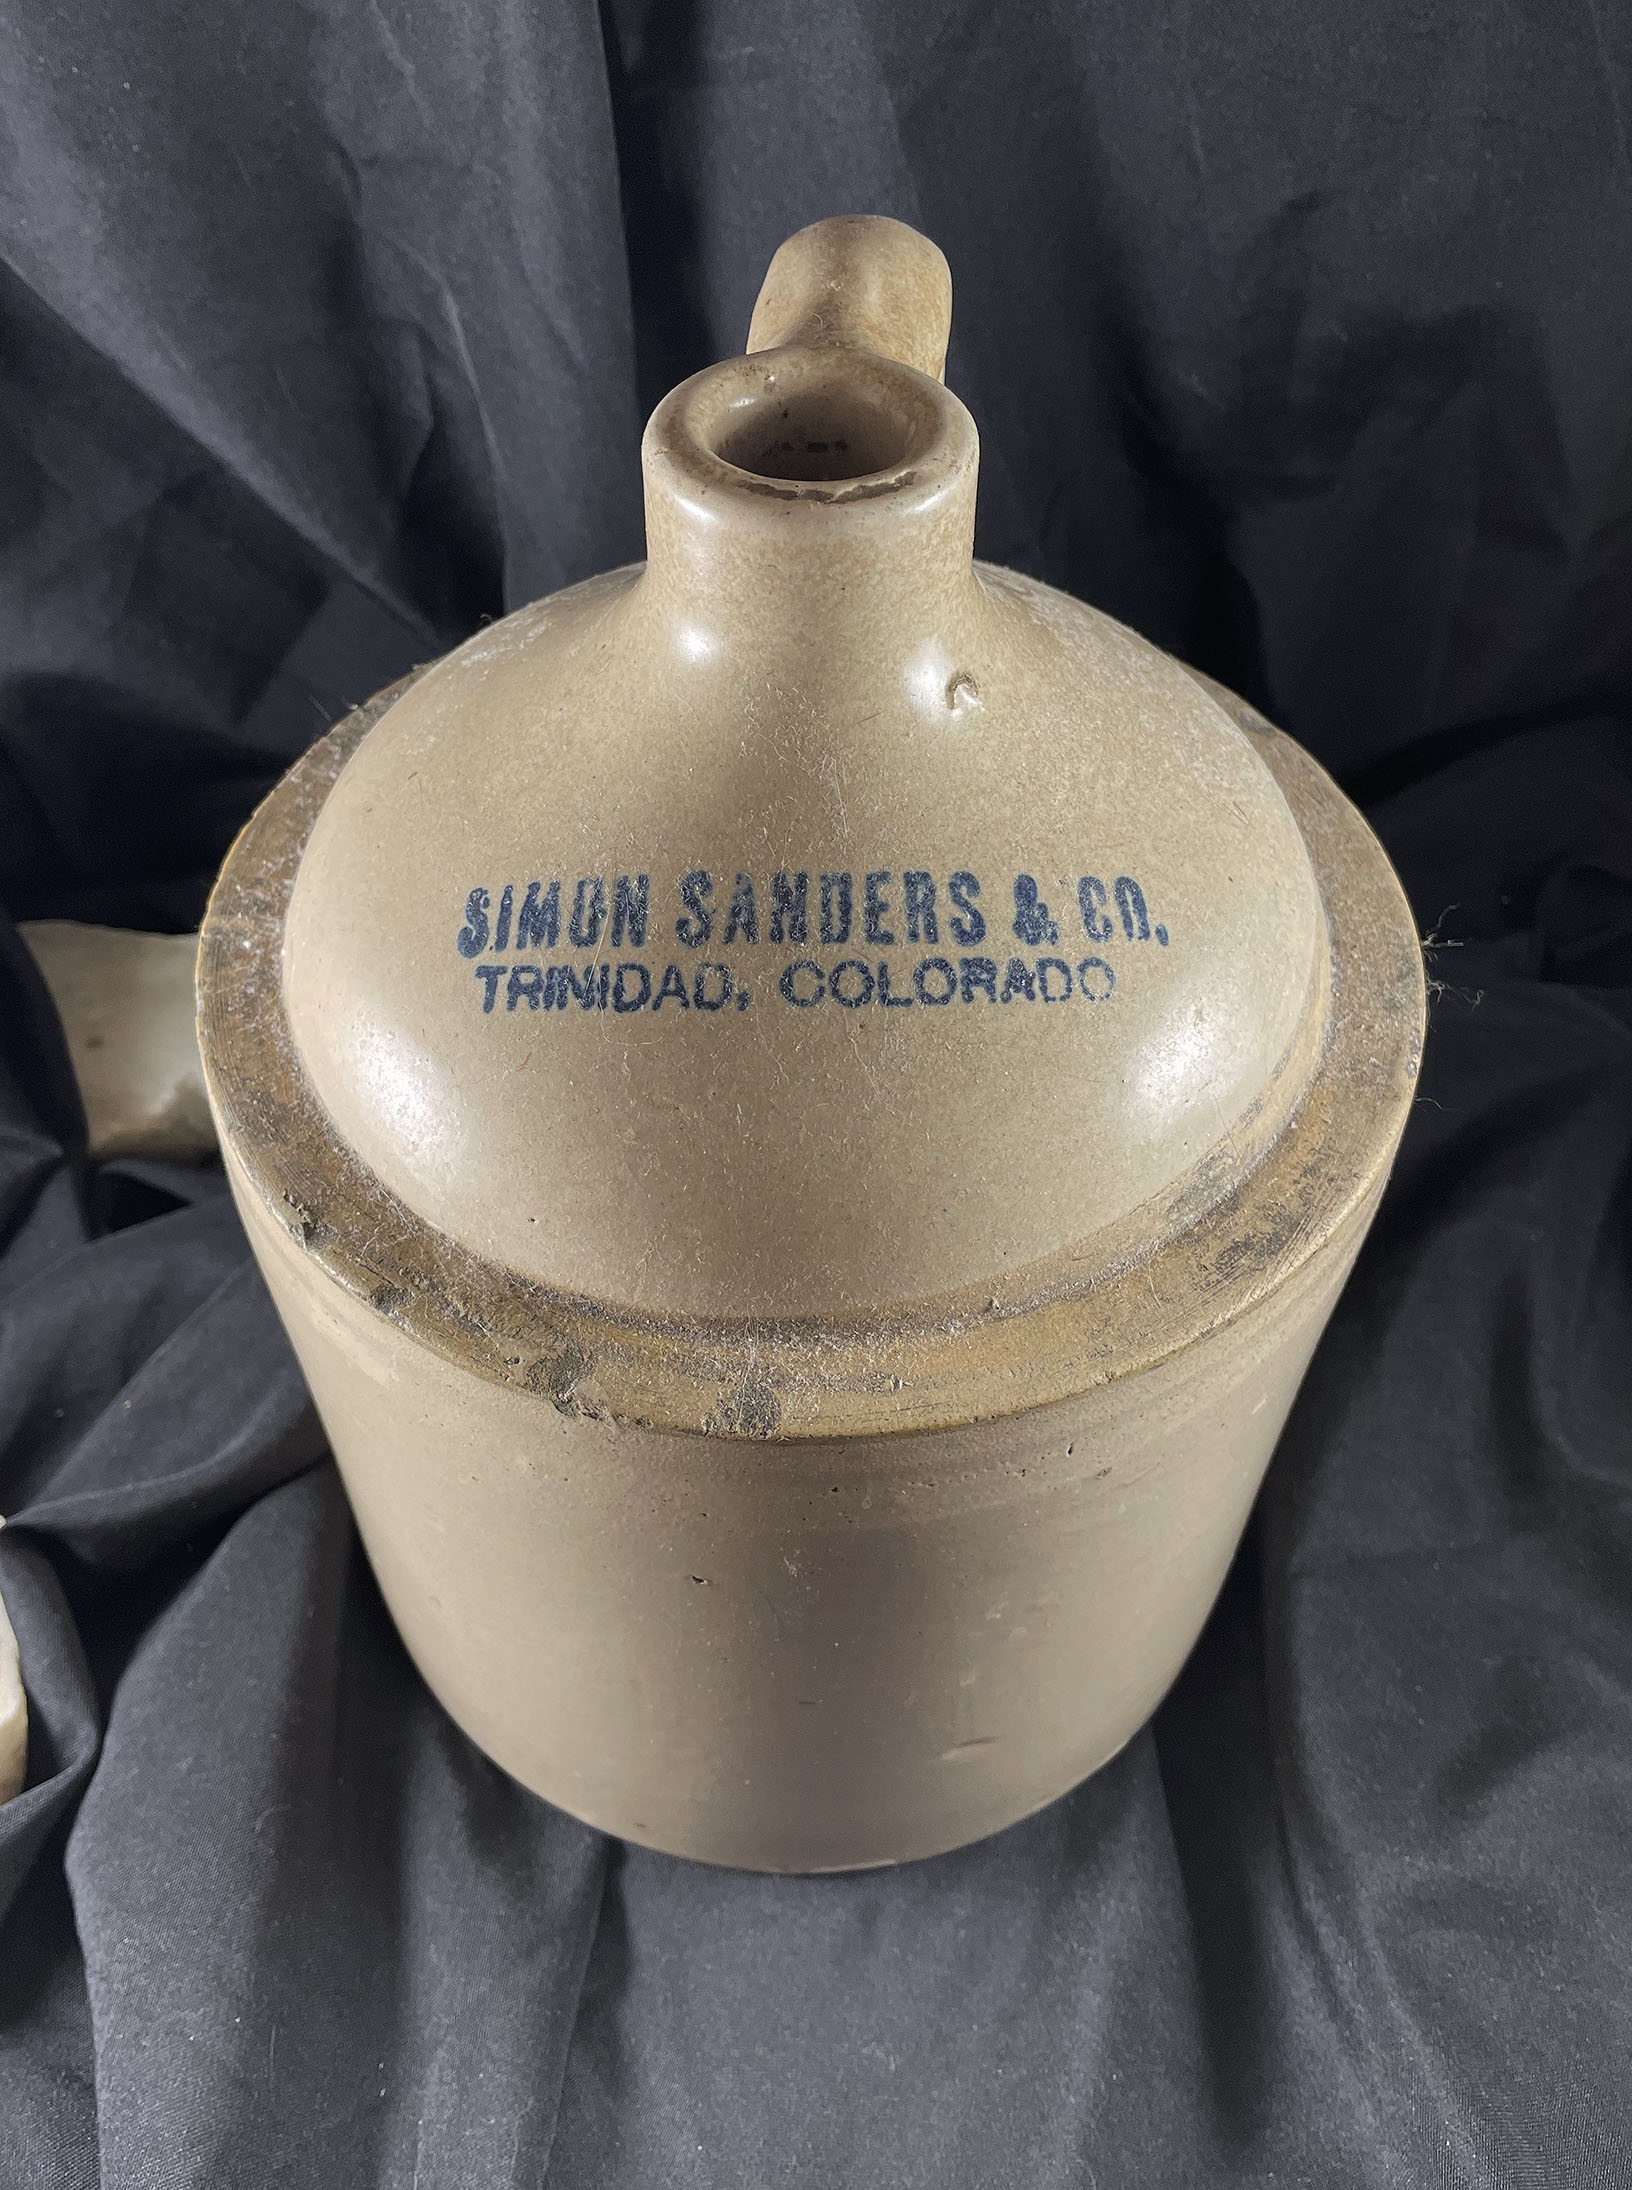 TRINIDAD COLORADO SIMON SAUNDERS & Company antique saloon whiskey jug 1910